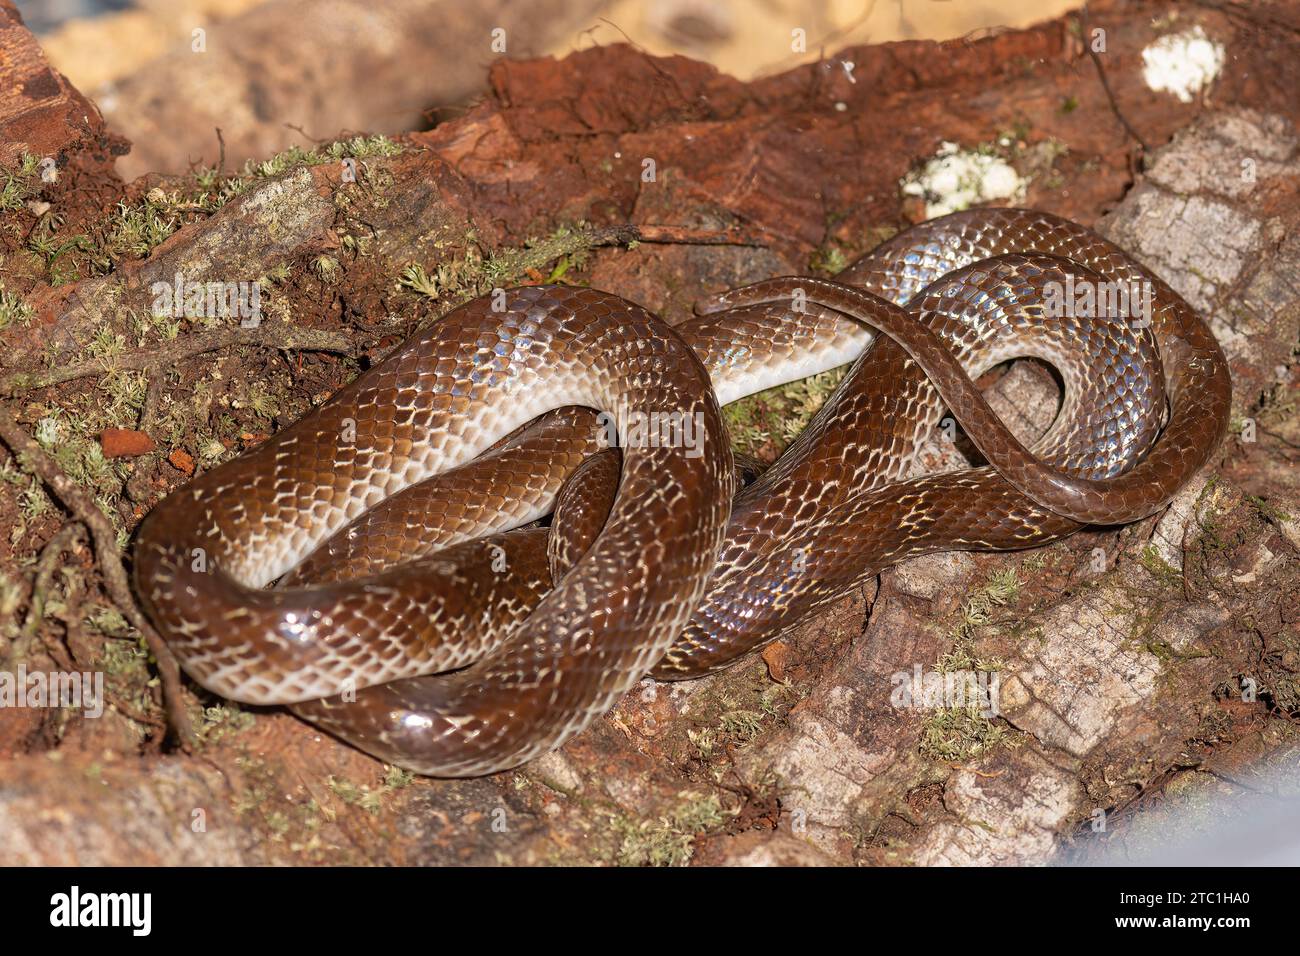 Introduit le serpent loup asiatique (Lycodon aulicus), un ravageur en Australie - captif Banque D'Images